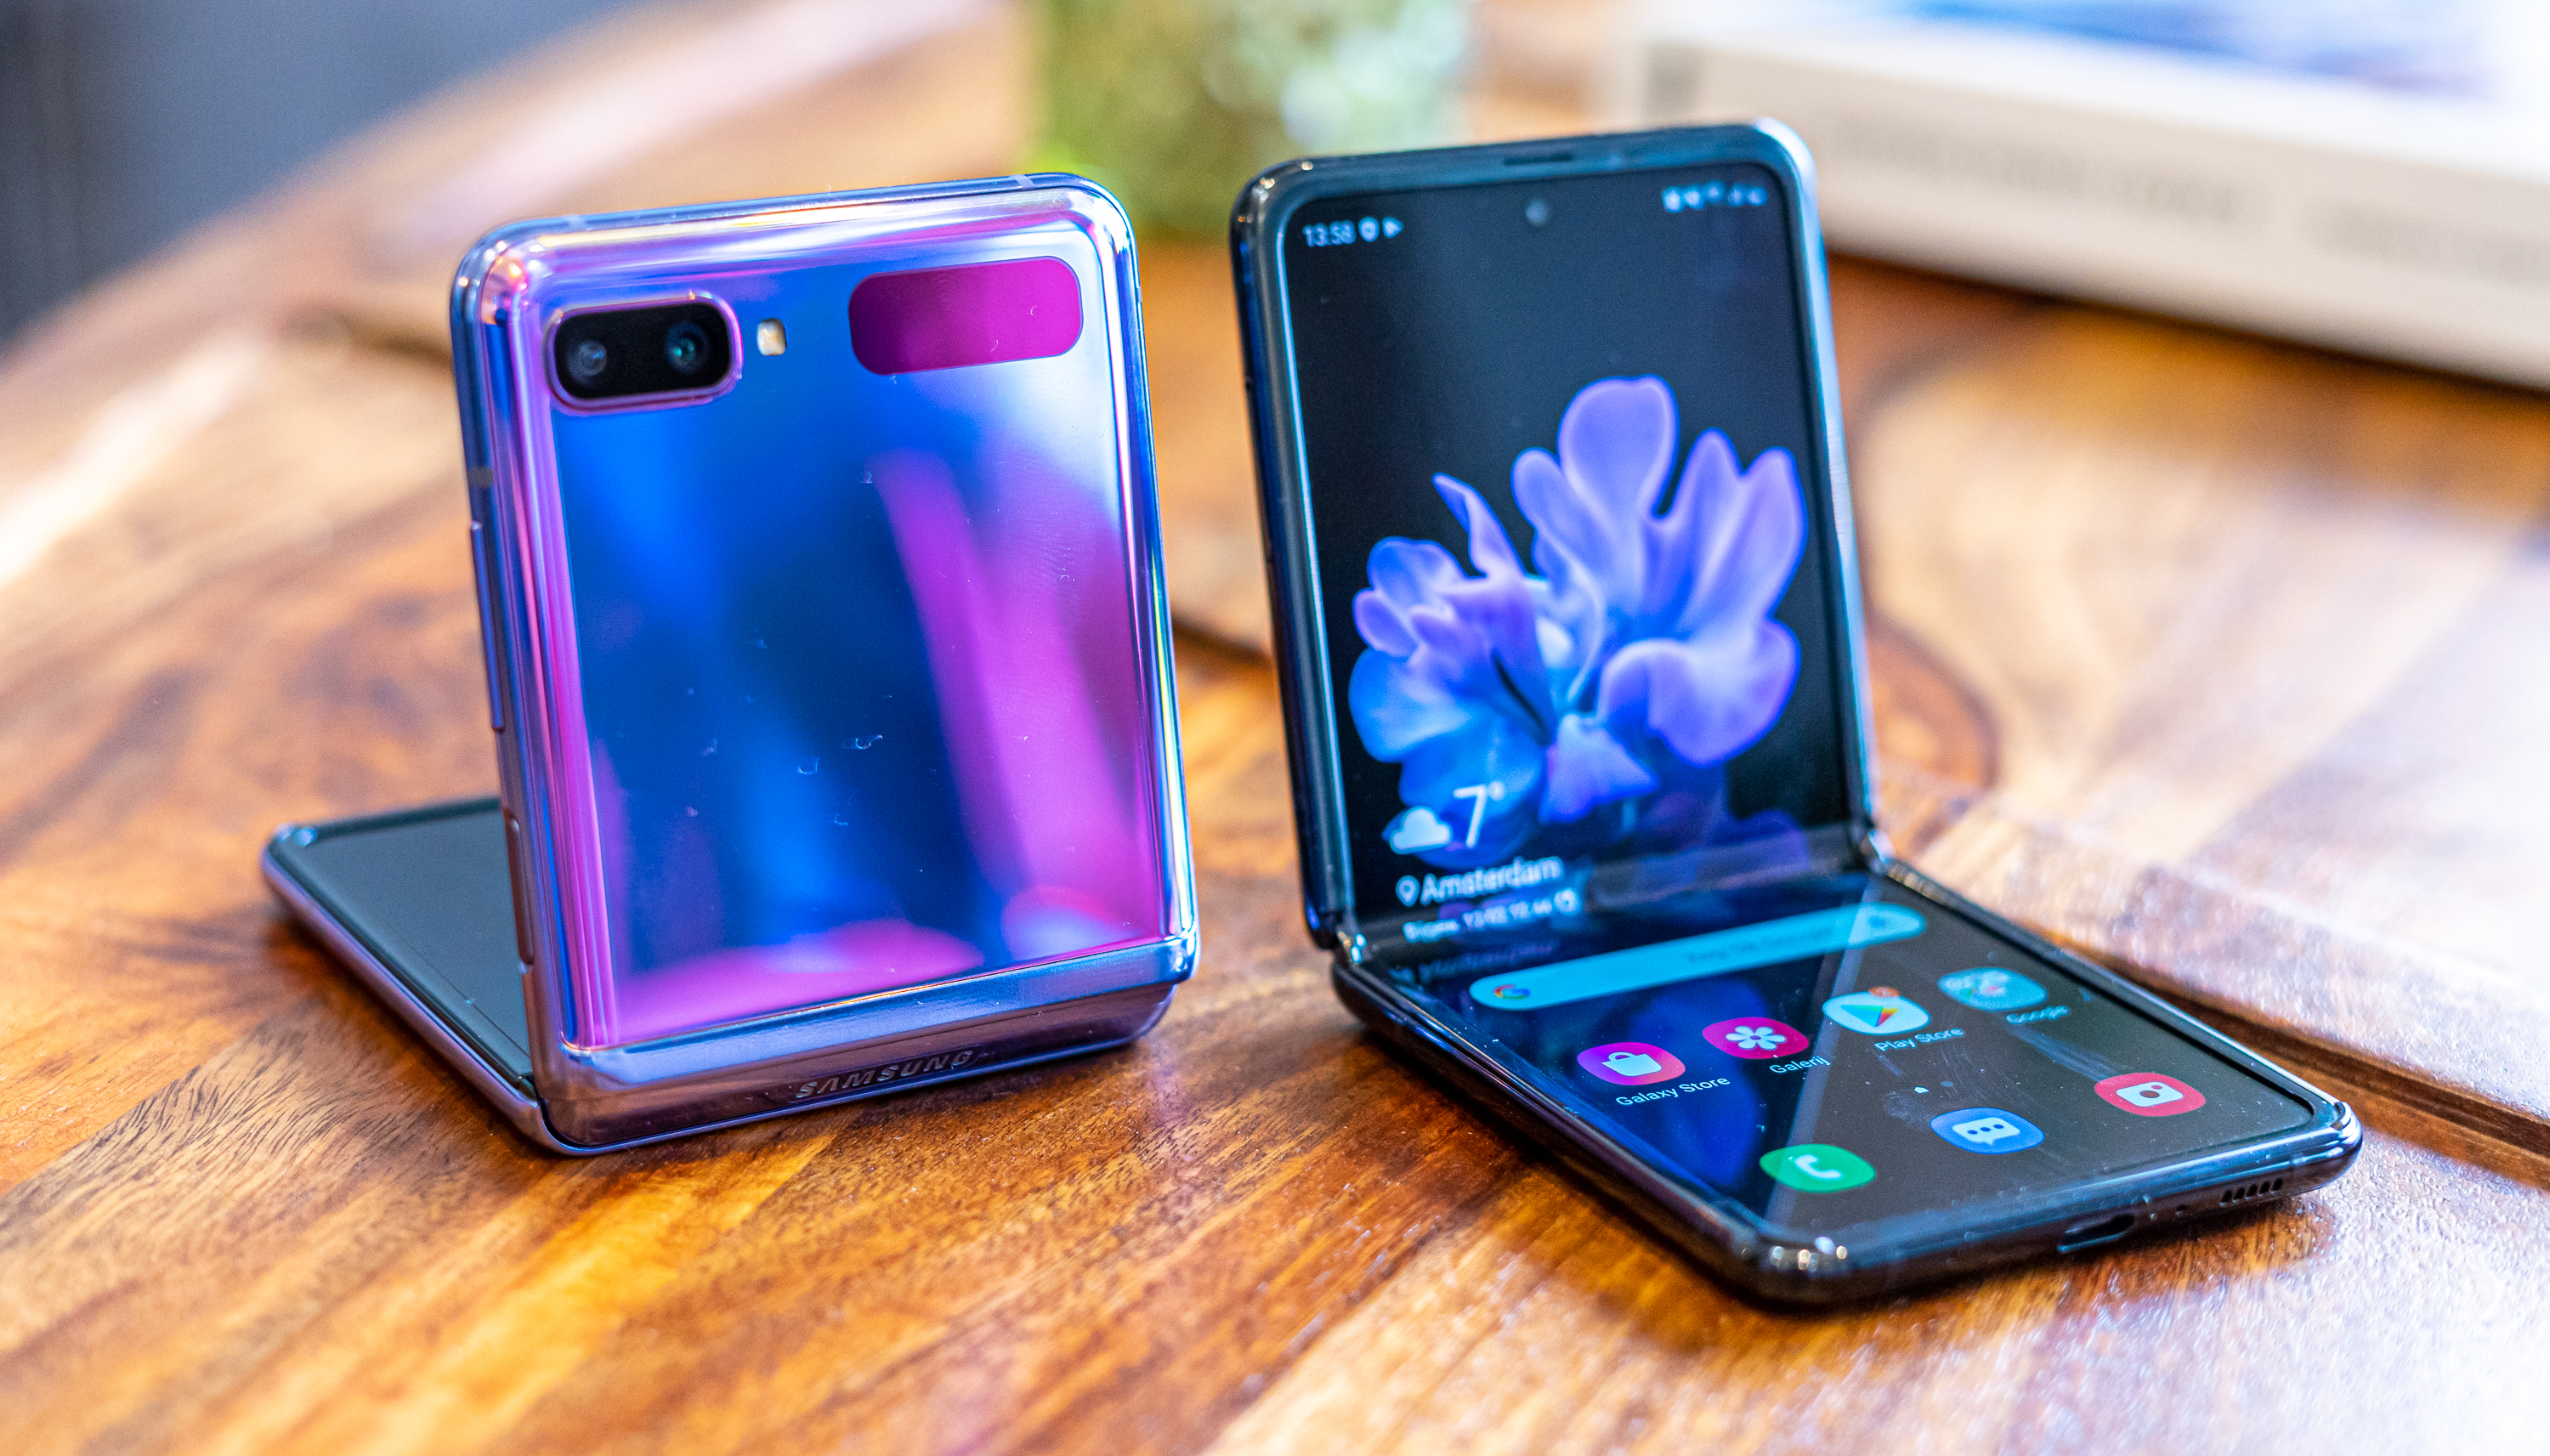 oppervlakkig Ru bellen Review] Samsung Galaxy Z Flip: groots in zijn klasse (maar wat zegt dat?)